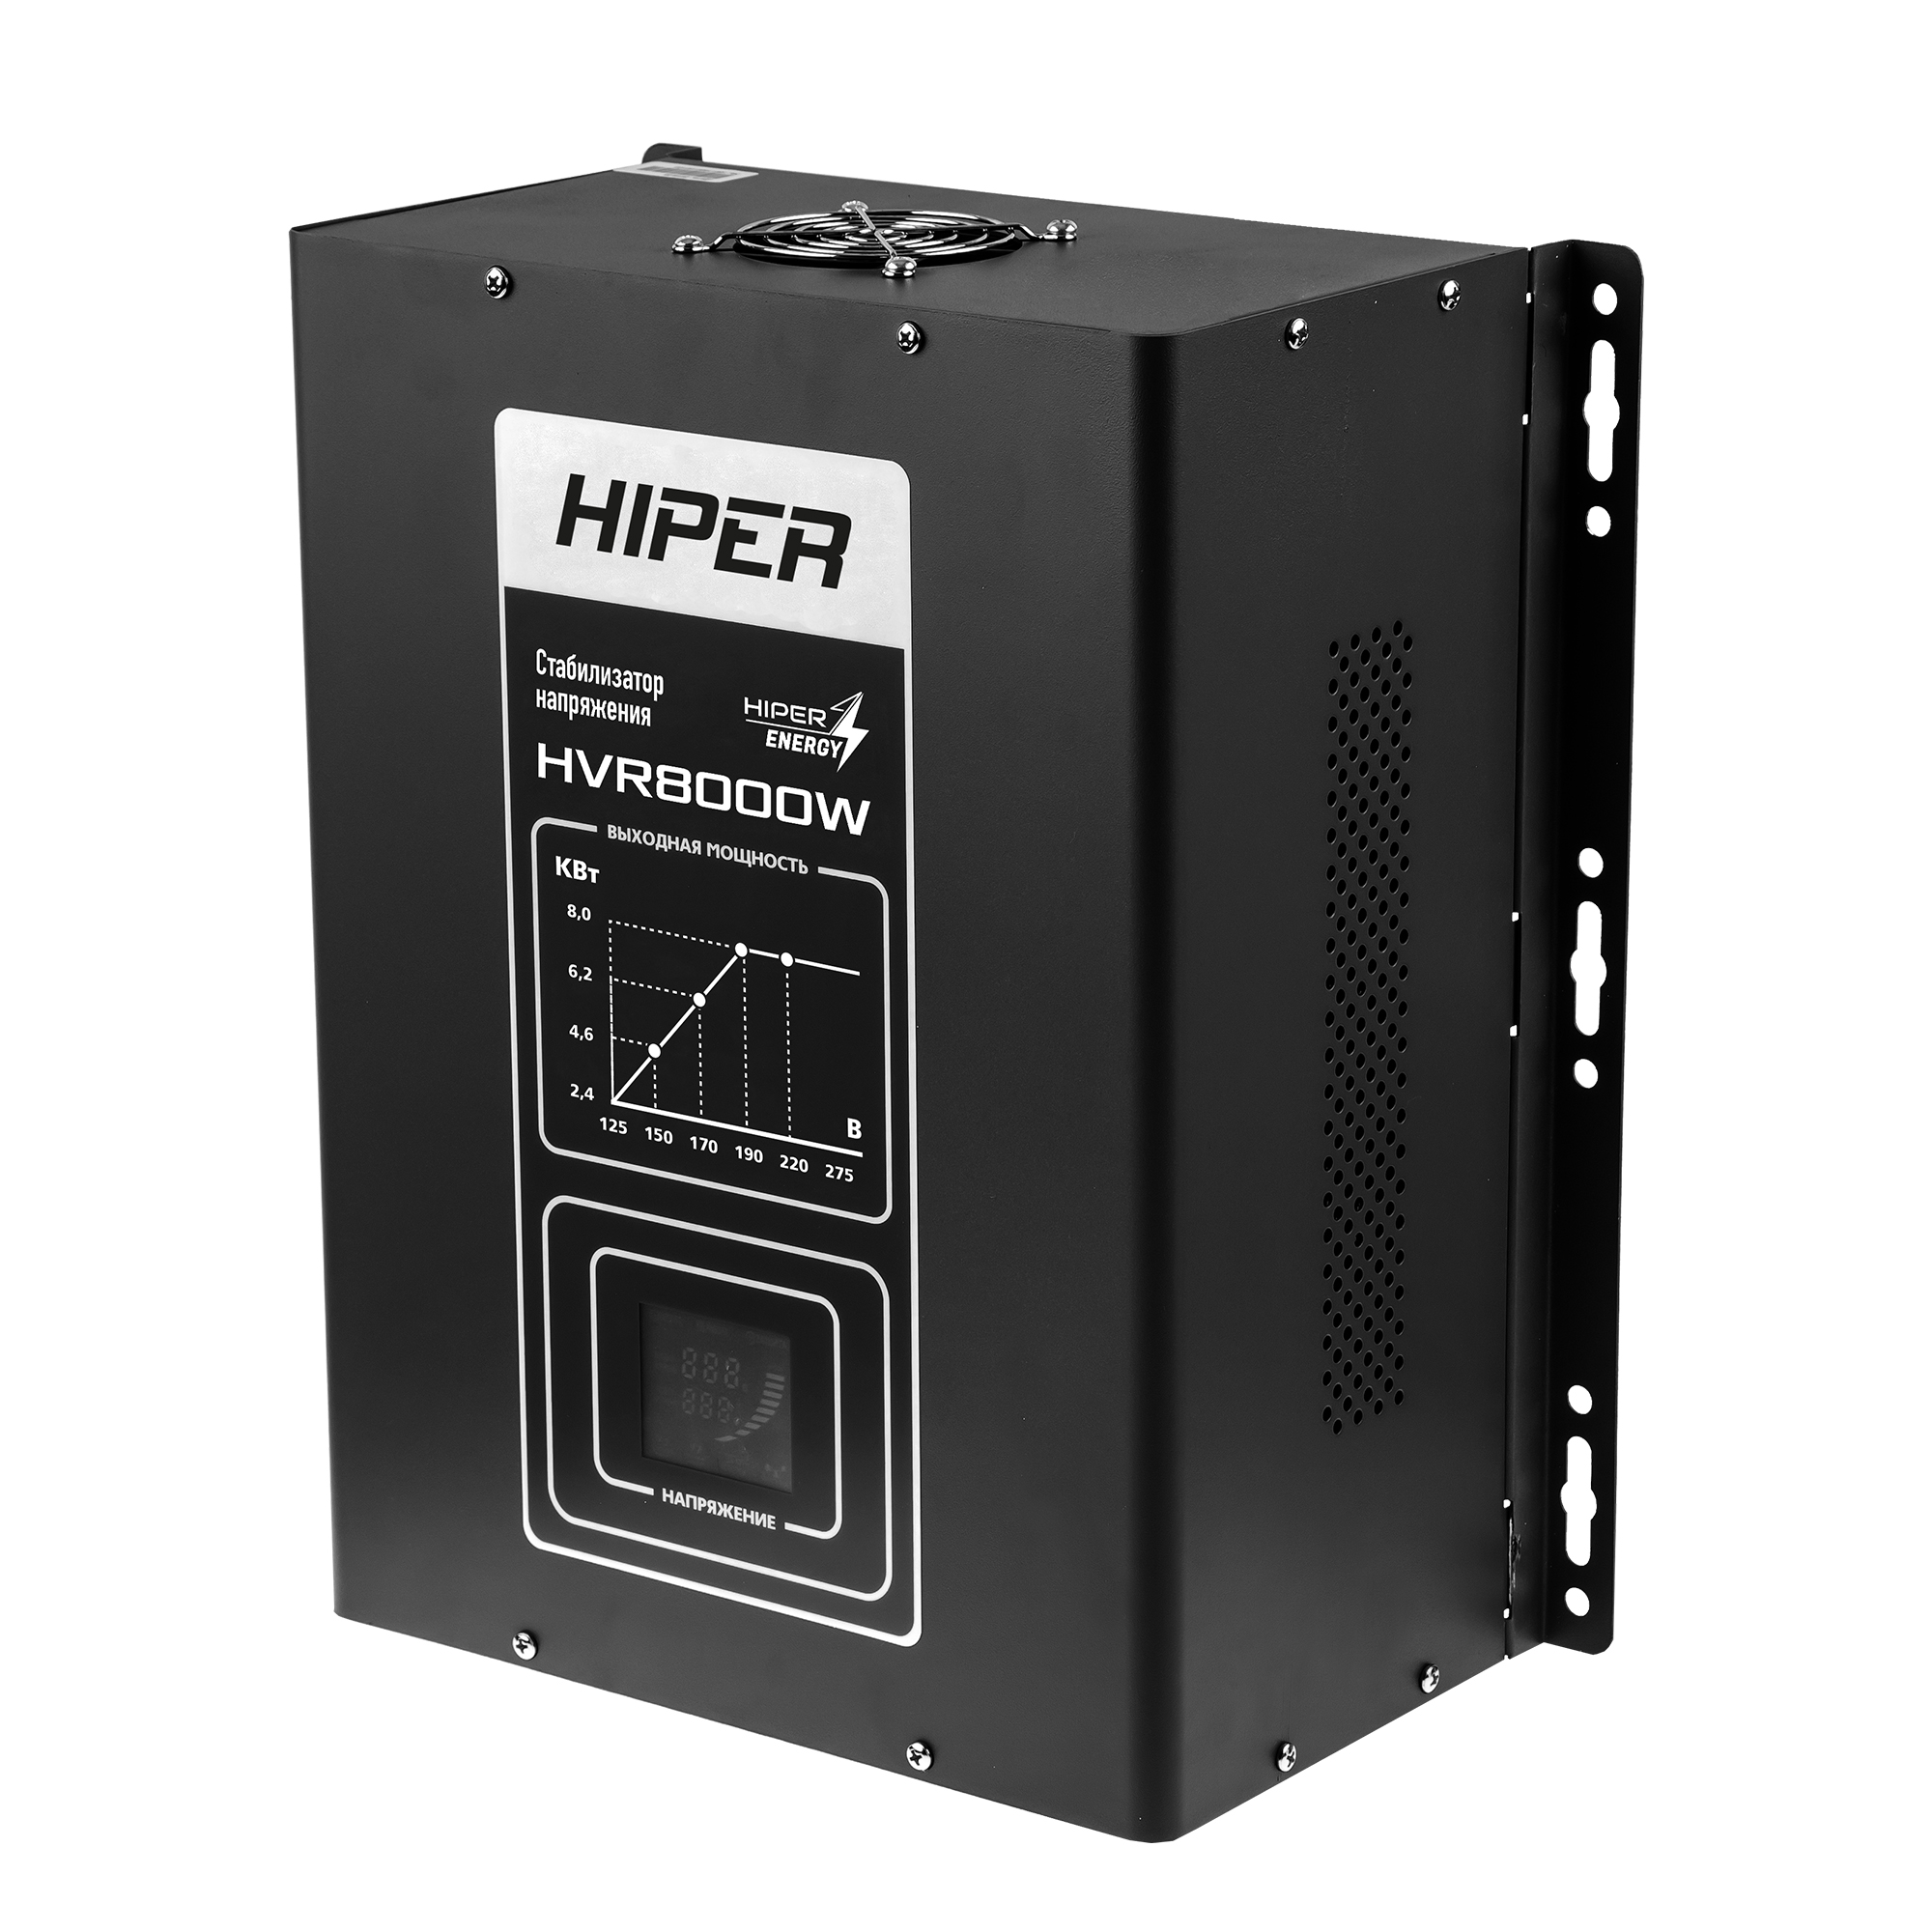 Стабилизатор напряжения Hiper HVR8000W, 8000VA, 6.4кВт, клеммная колодка, черный - фото 1